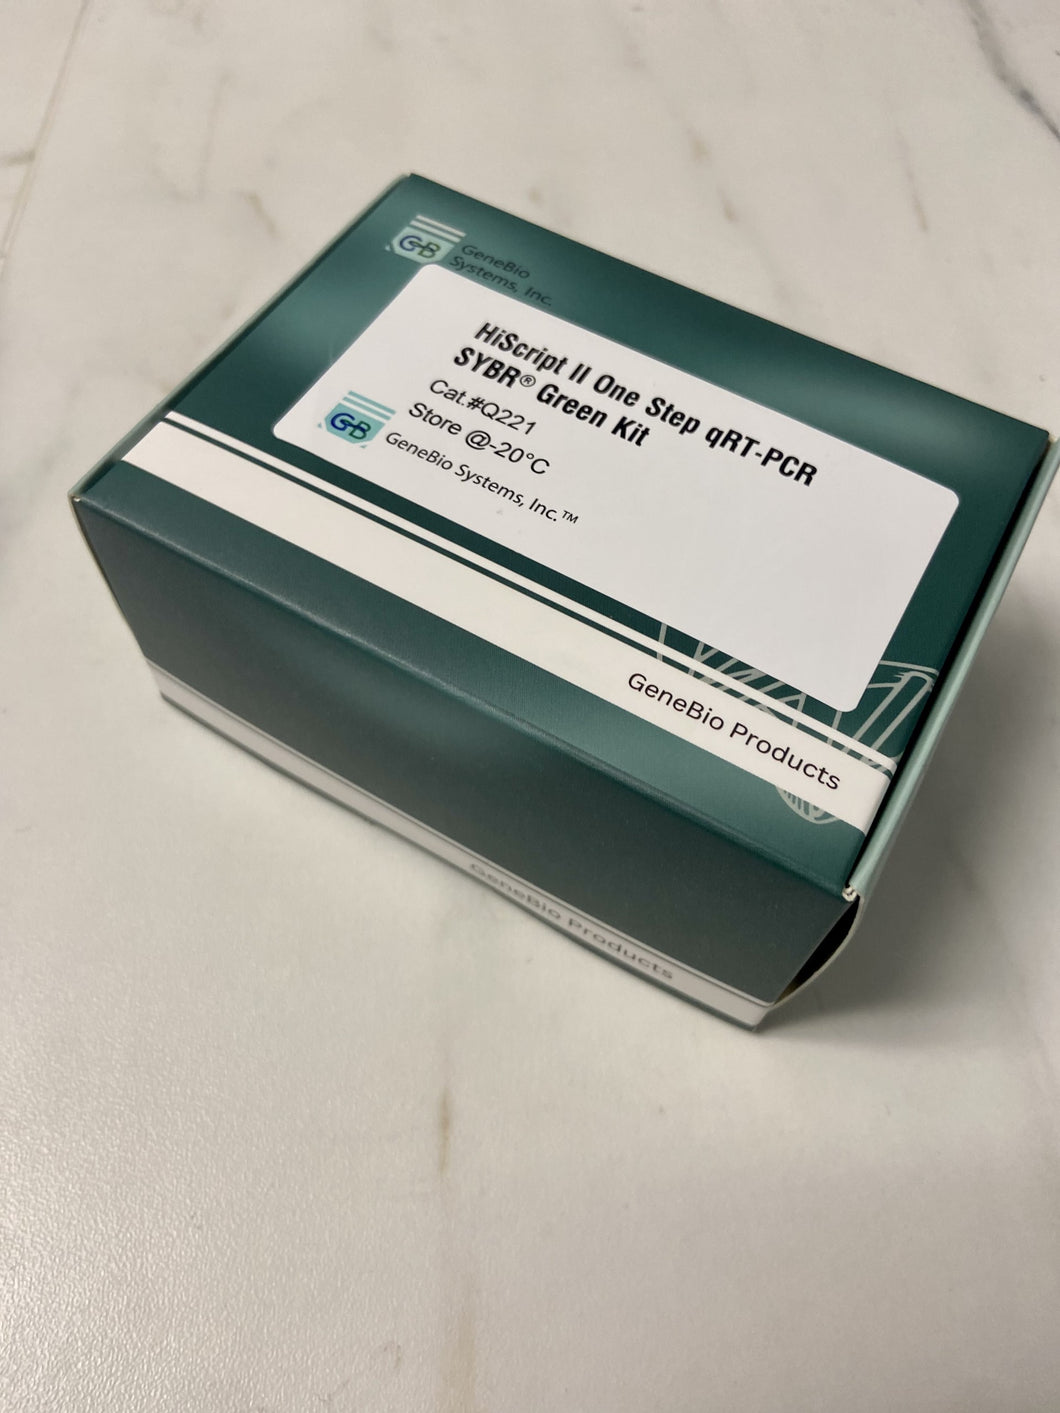 HiScript® II One Step qRT-PCR SYBR Green Kit